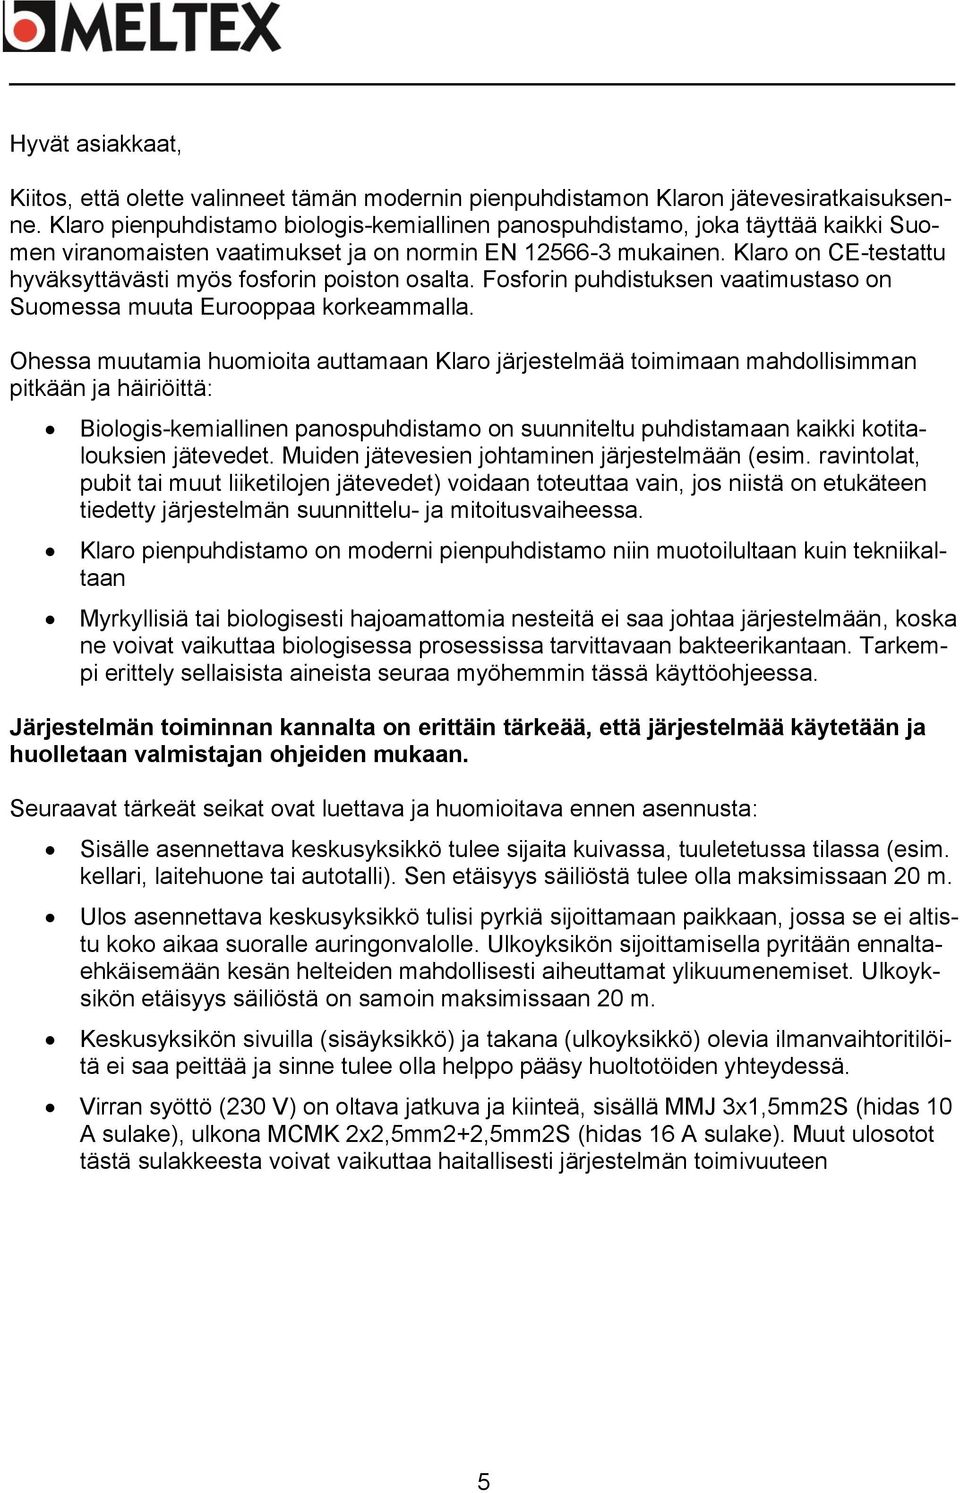 Klaro on CE-testattu hyväksyttävästi myös fosforin poiston osalta. Fosforin puhdistuksen vaatimustaso on Suomessa muuta Eurooppaa korkeammalla.